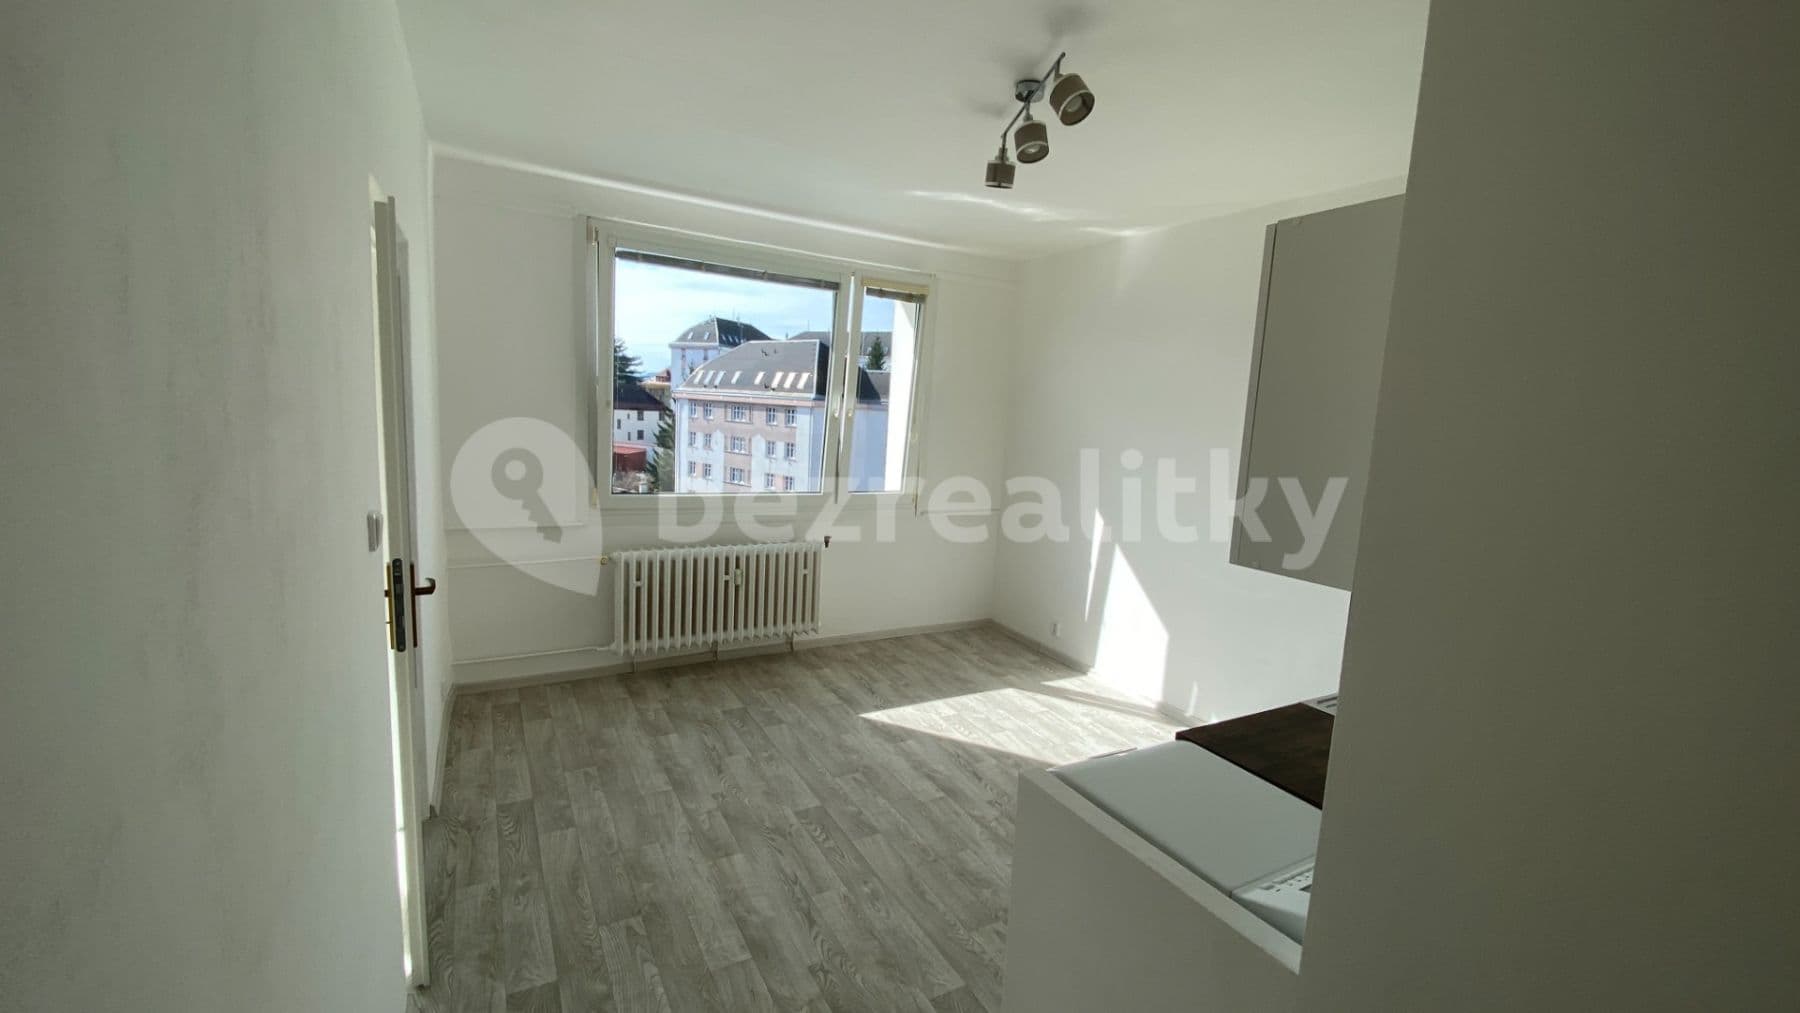 1 bedroom with open-plan kitchen flat to rent, 38 m², Lužická, Jablonec nad Nisou, Liberecký Region